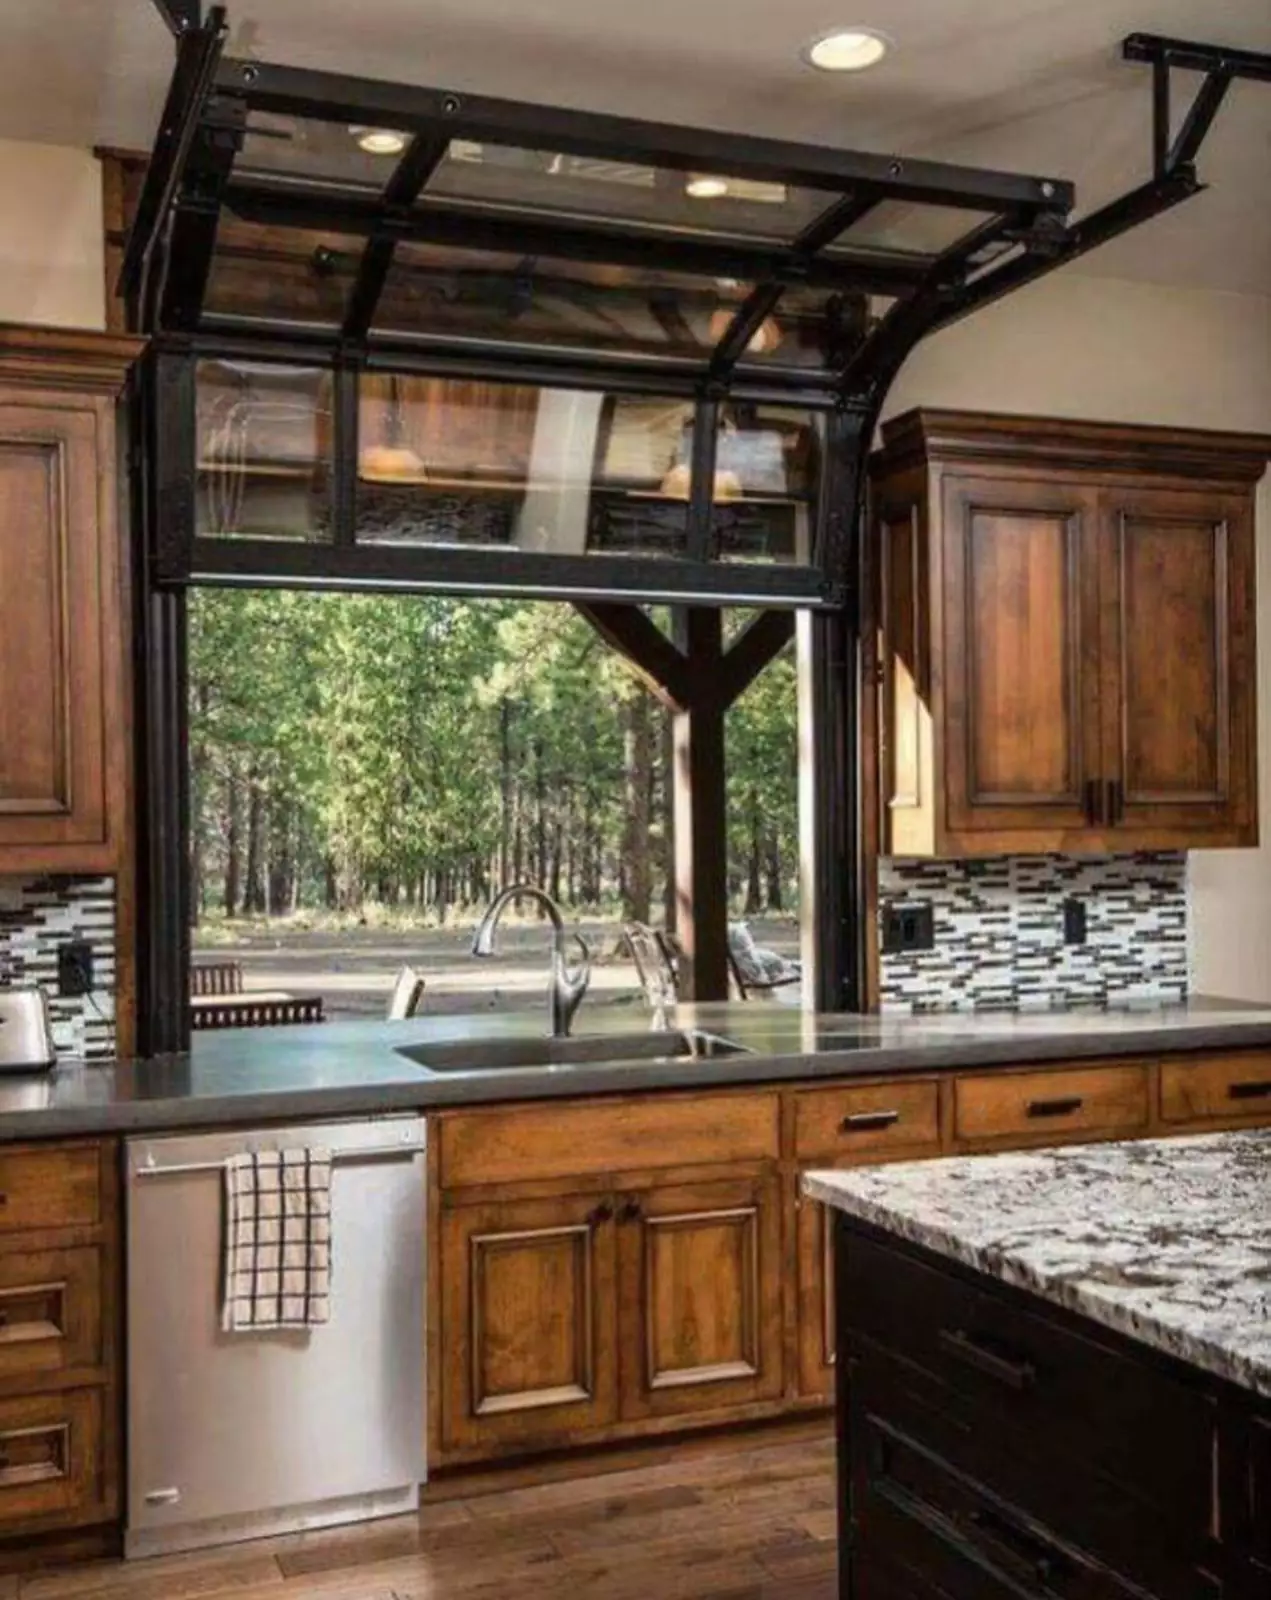 Окно на кухне в виде гаражной двери.